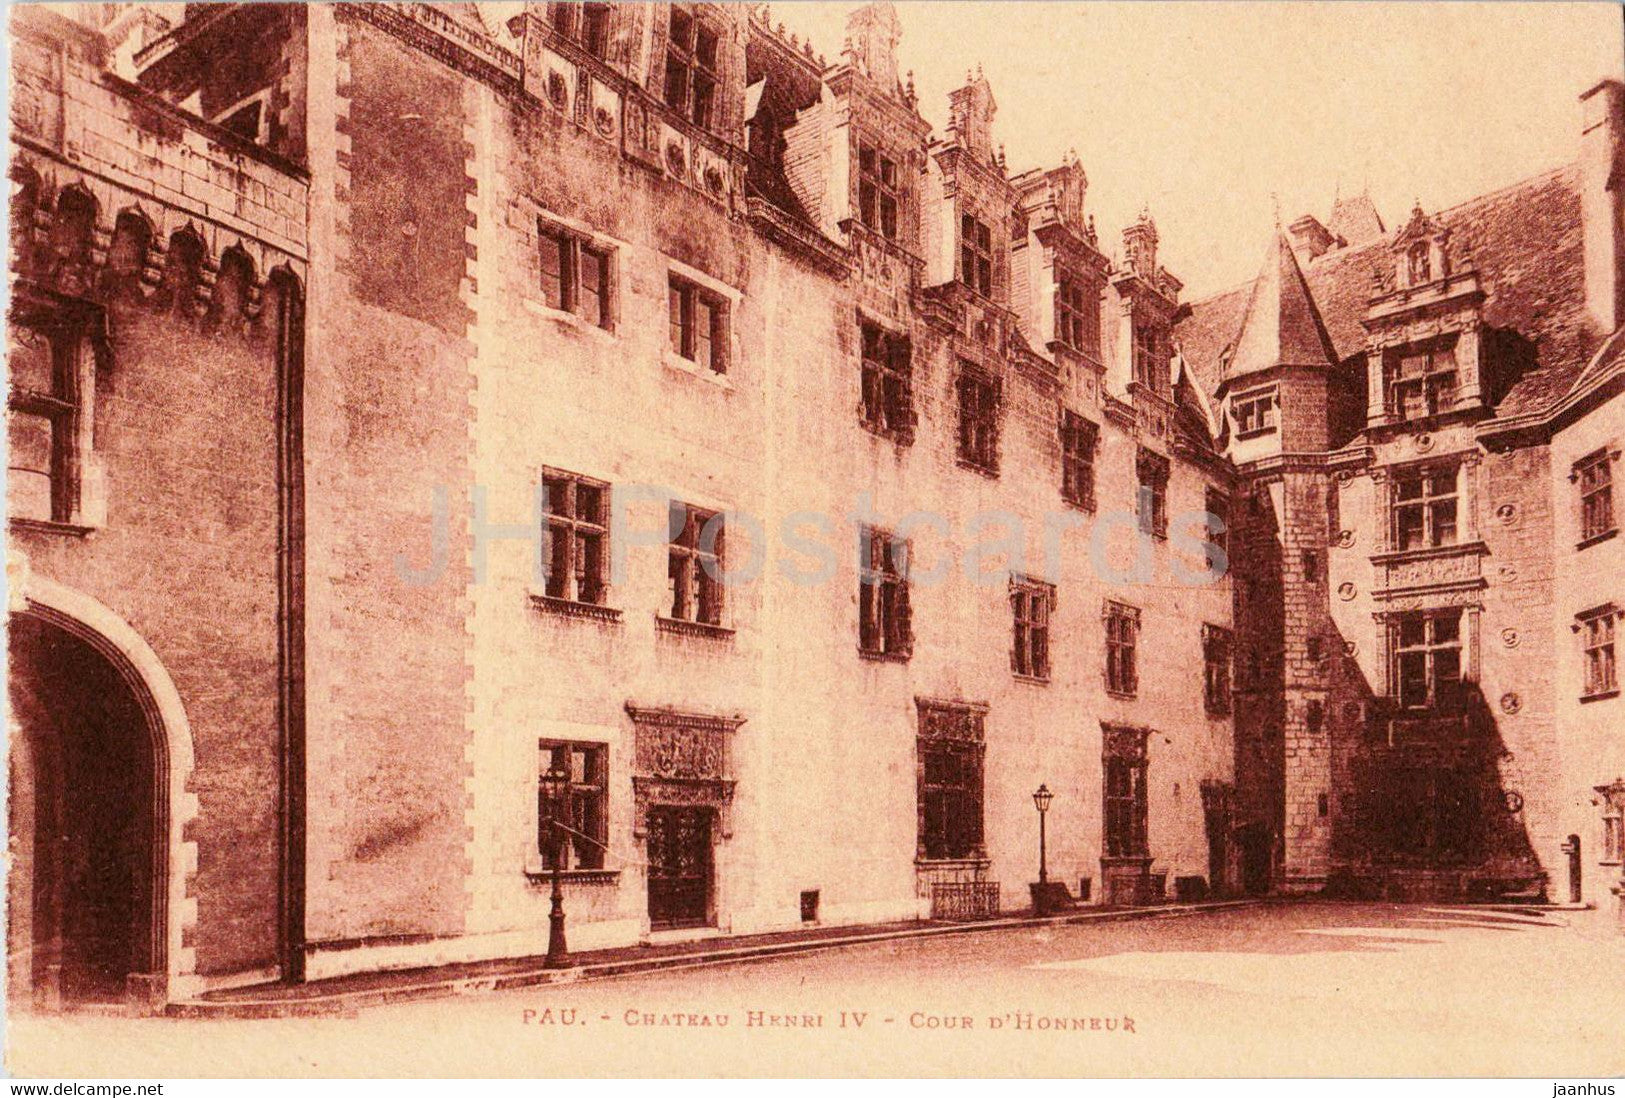 Pau - Chateau Henri IV Cour D'Honneur - castle - old postcard - France - unused - JH Postcards